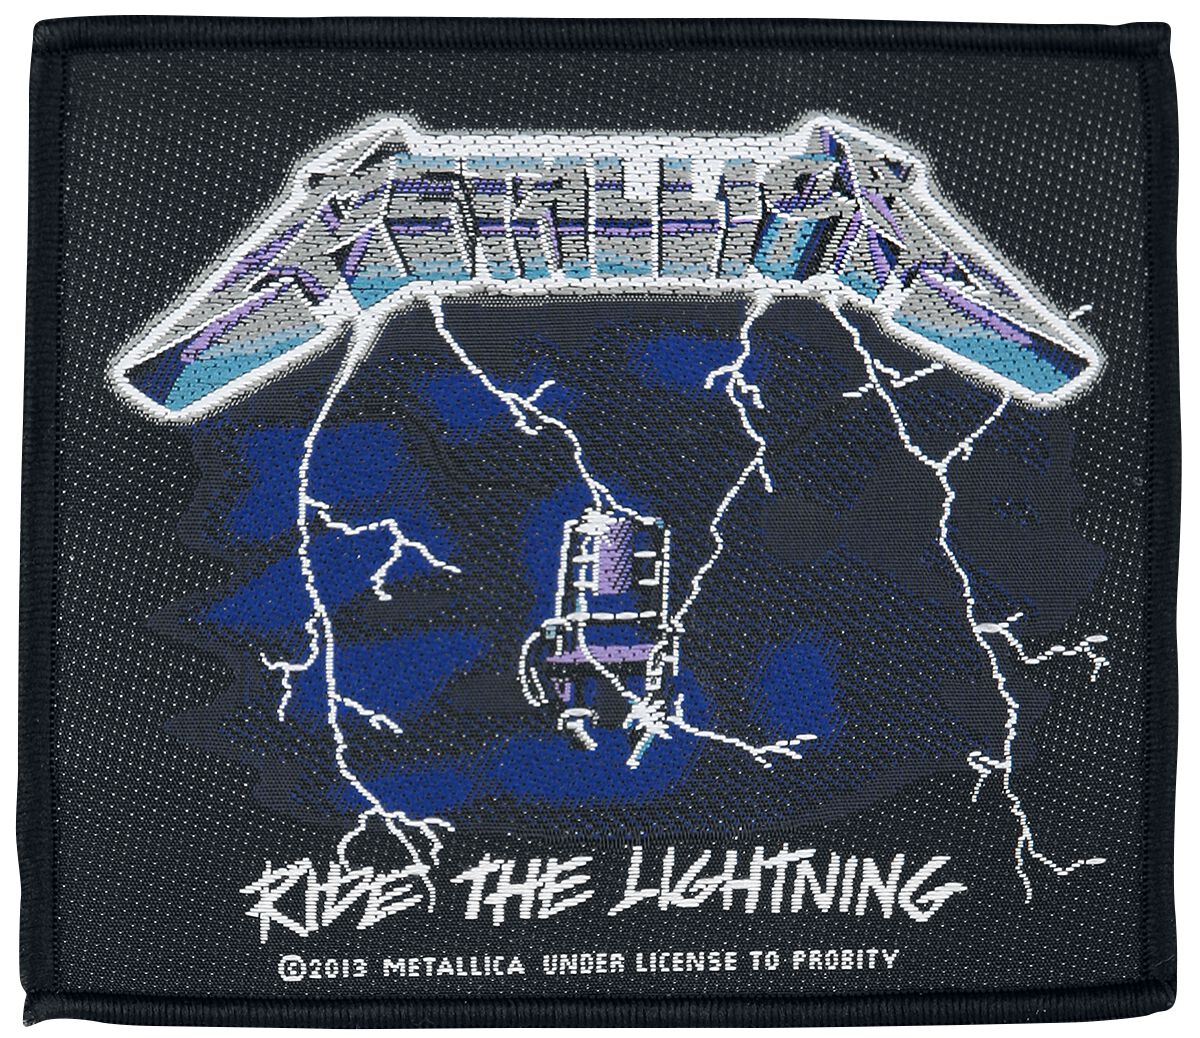 Metallica Patch - Ride The Lightning - schwarz/blau/weiß  - Lizenziertes Merchandise!